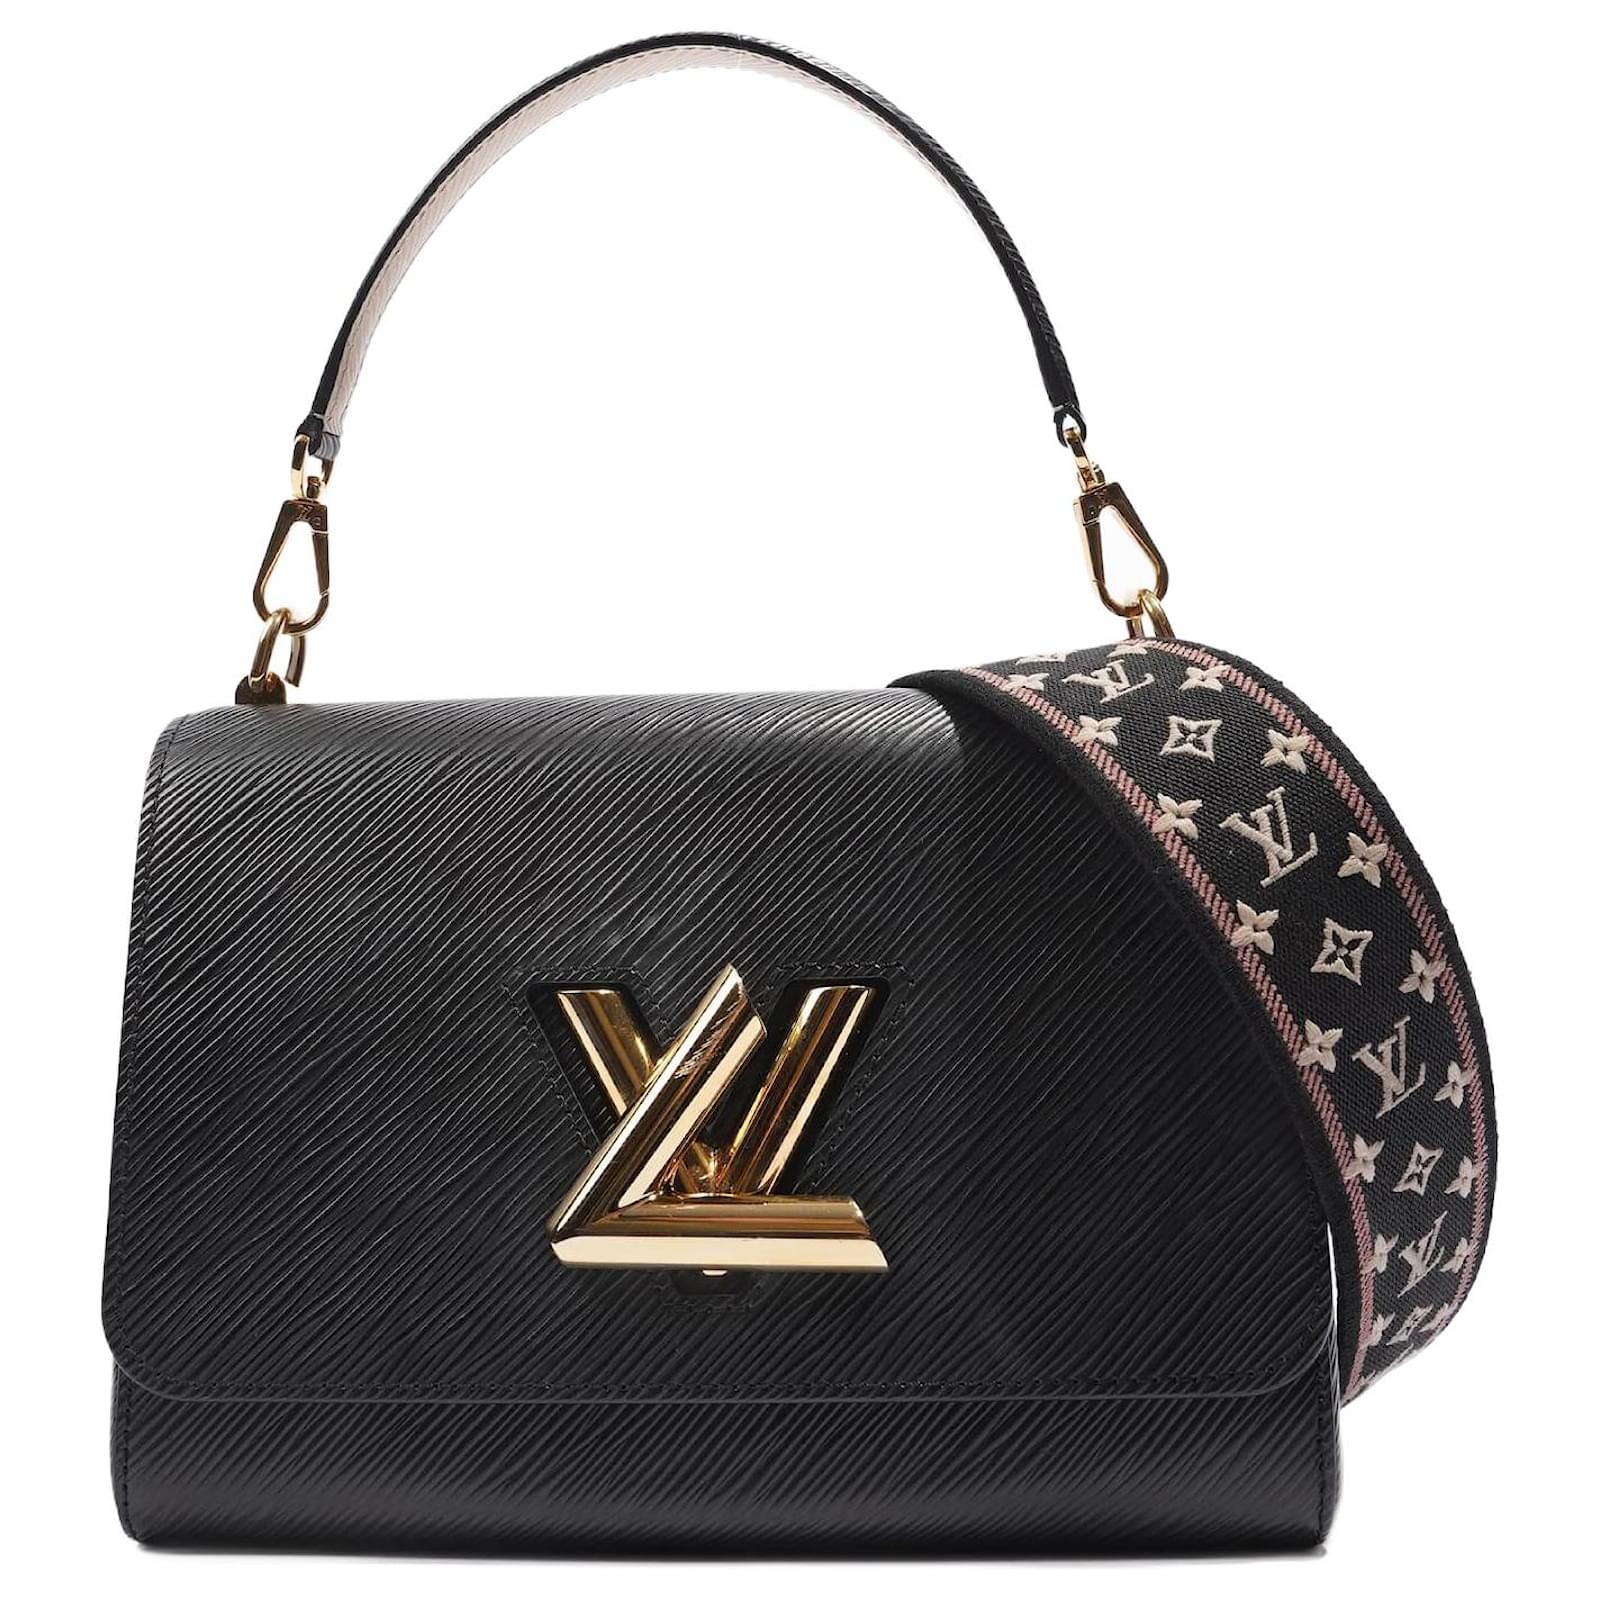 Louis Vuitton Twist Edition Limitee Shoulder Bag in Black EPI Leather